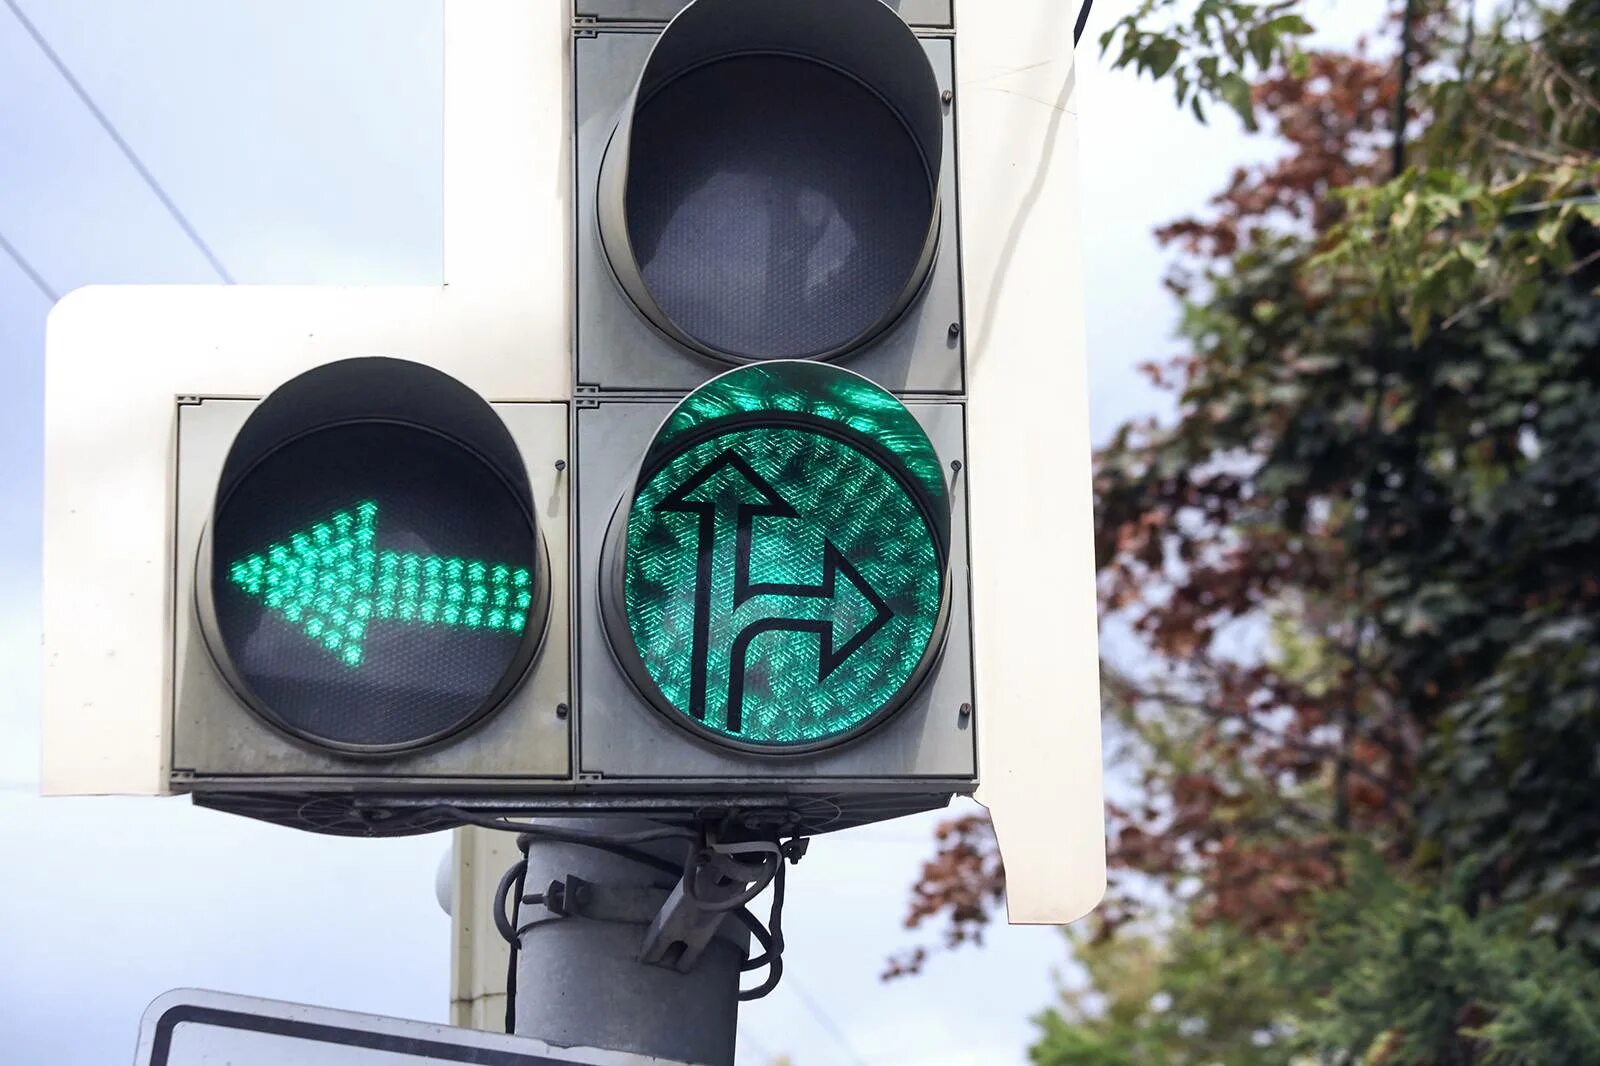 Дополнительная зеленая стрелка на светофоре налево. Зеленый светофор. Зеленая стрелка светофора. Светофор со стрелкой. Светофор с дополнительной секцией.